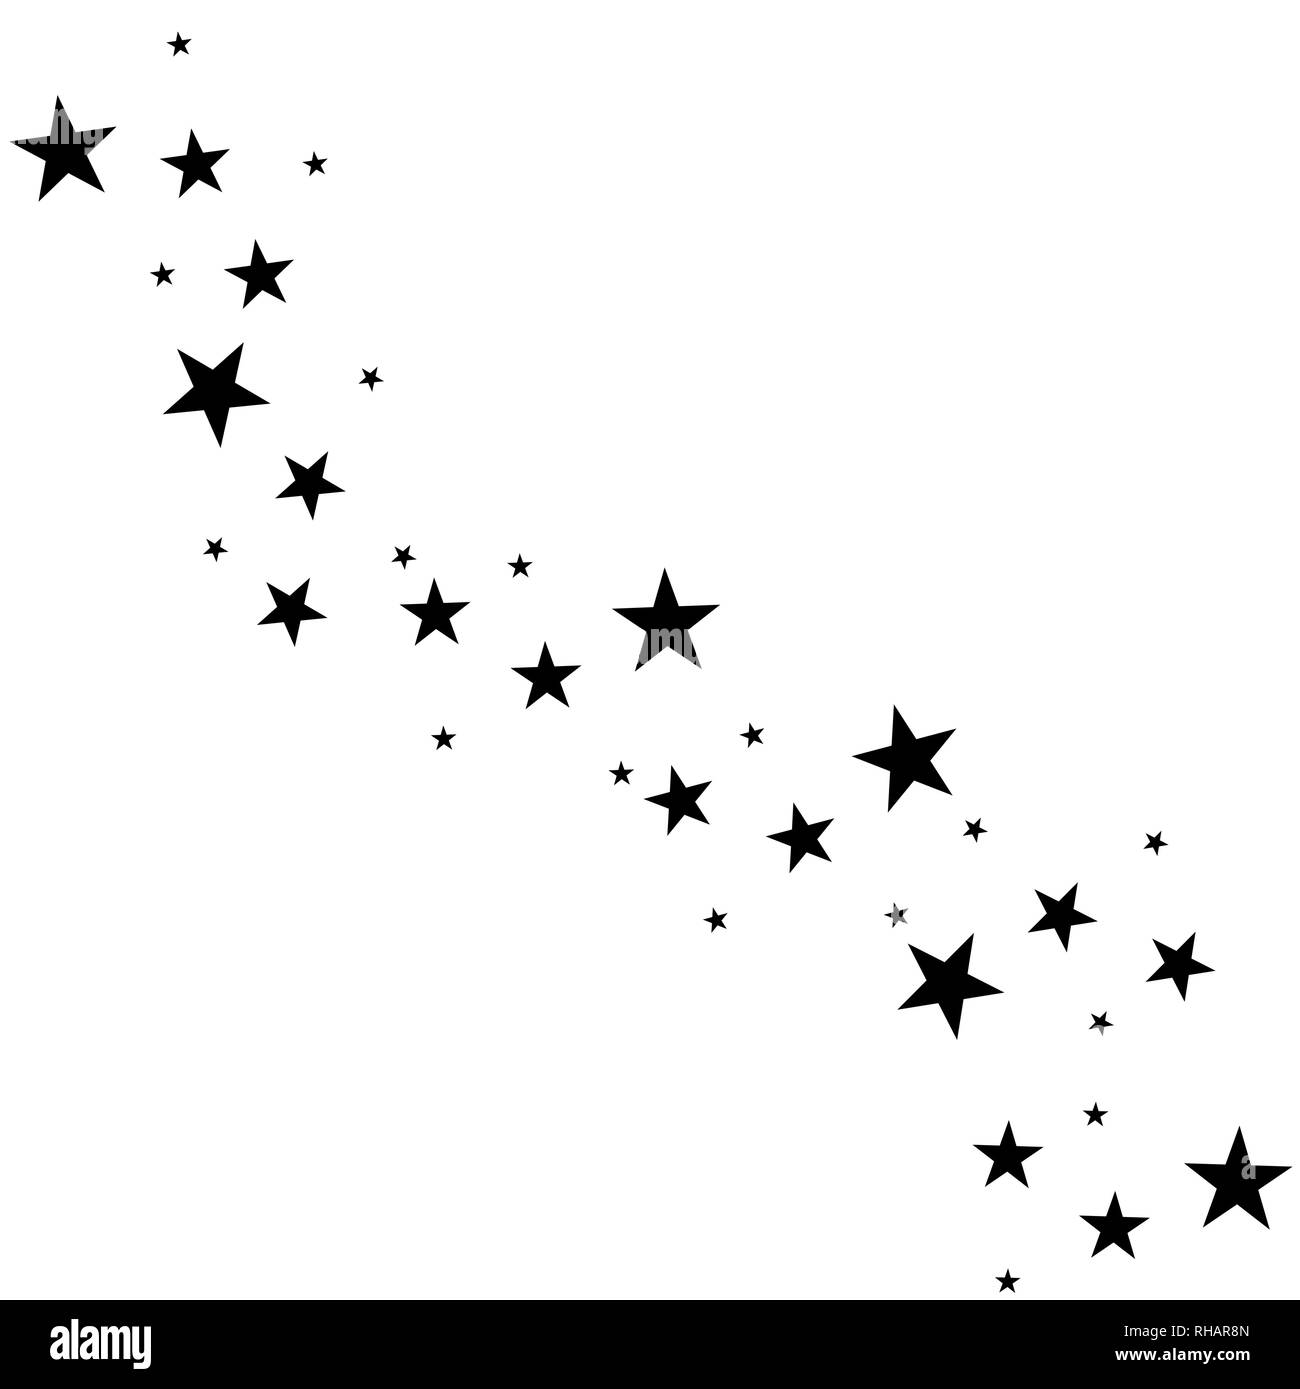 Falling Star. Cloud der Sterne auf weißem Hintergrund. Vector Illustration Stock Vektor